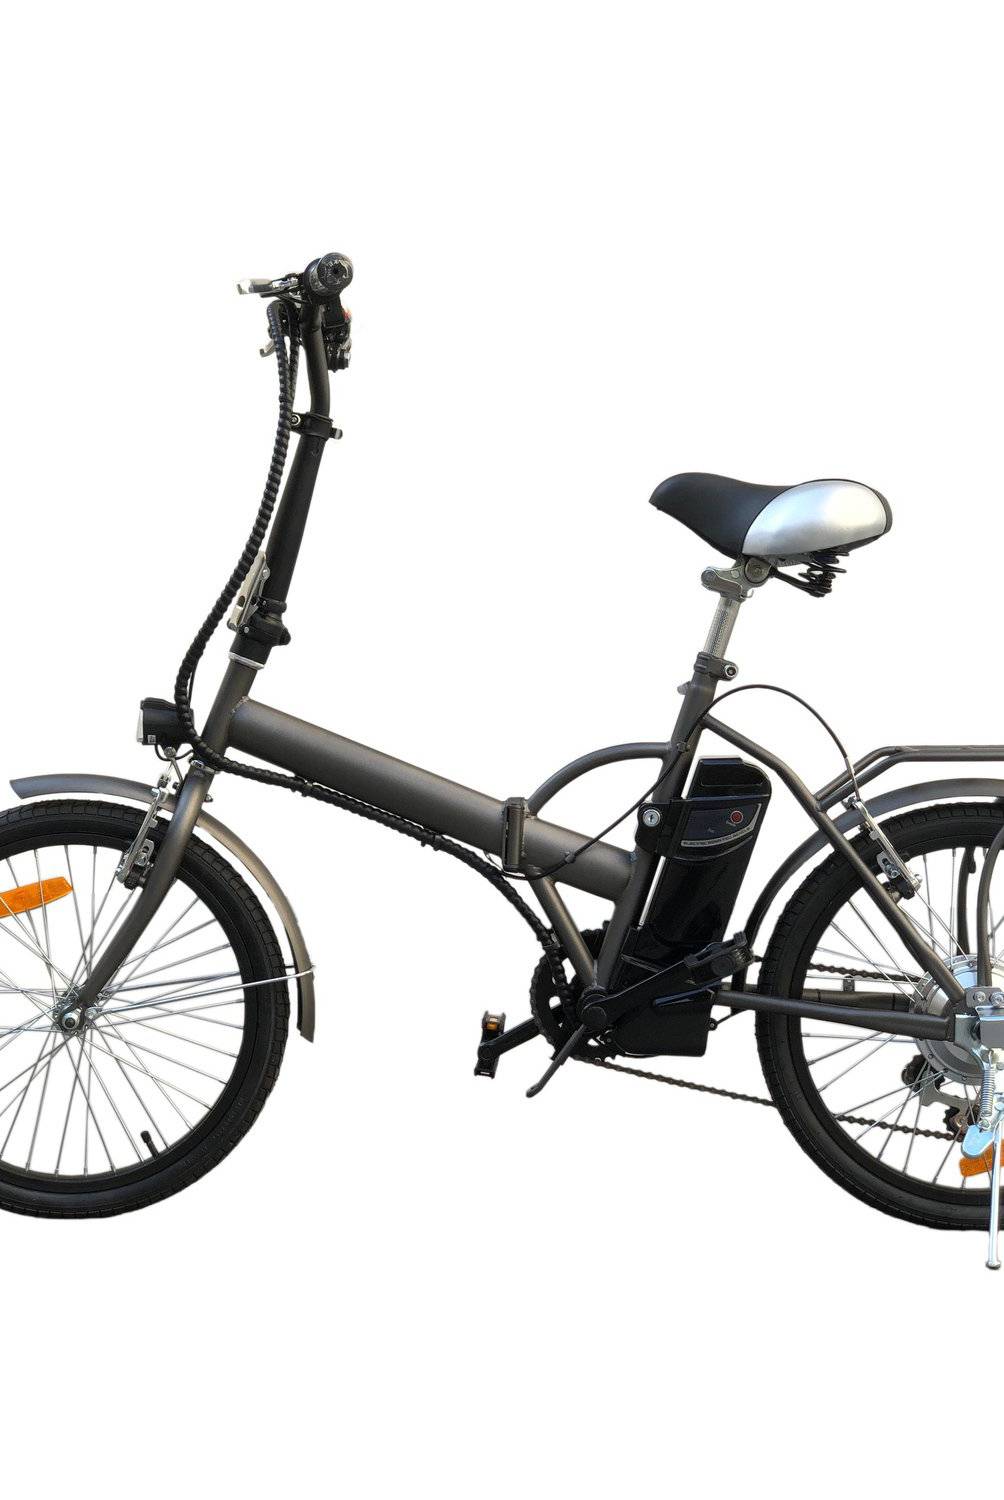 ZODIN - Bicicleta Aro 20" Electrica Plegable Antracita